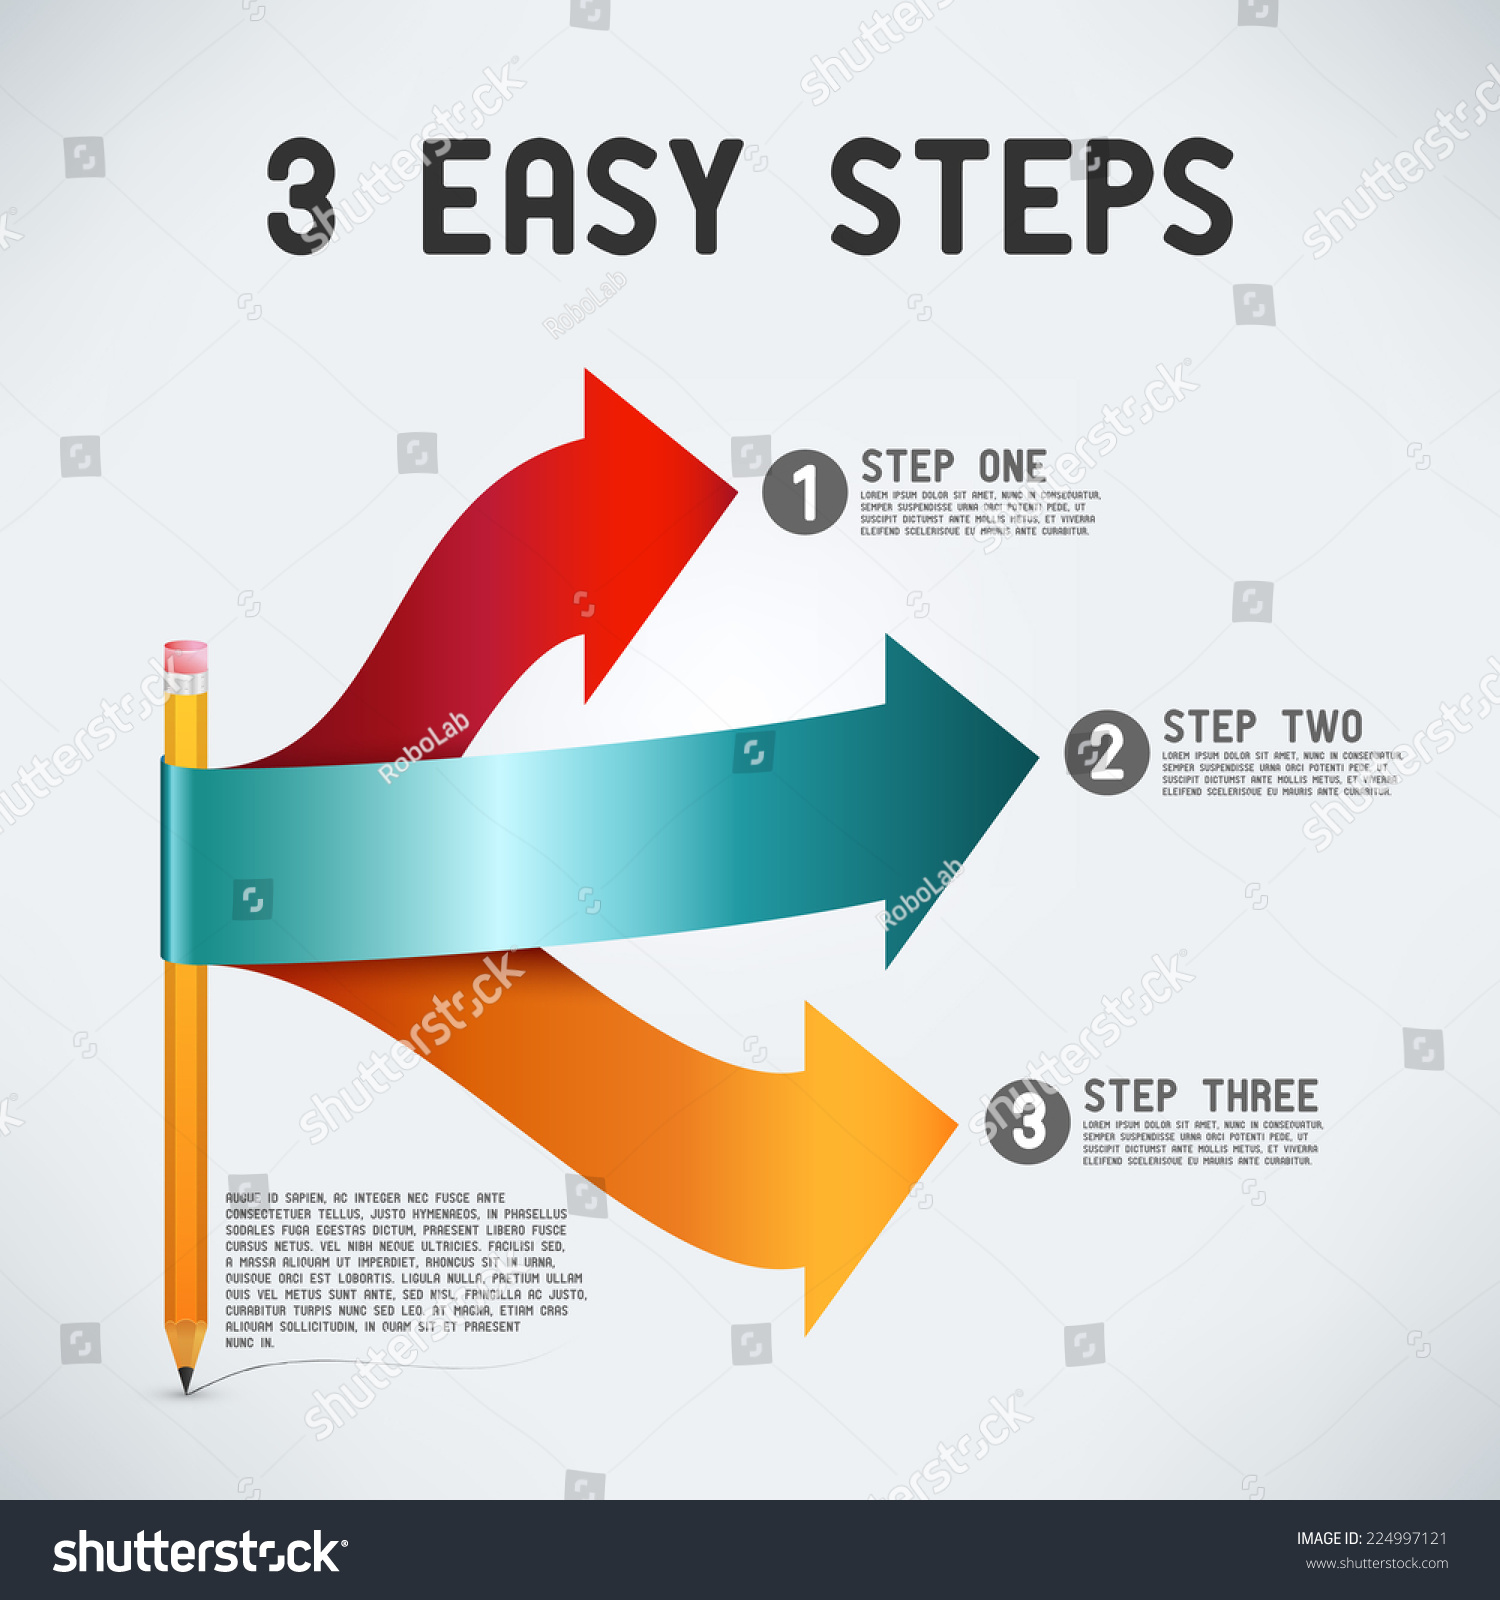 Easy steps 2. 3 Простых шага. Easy steps.